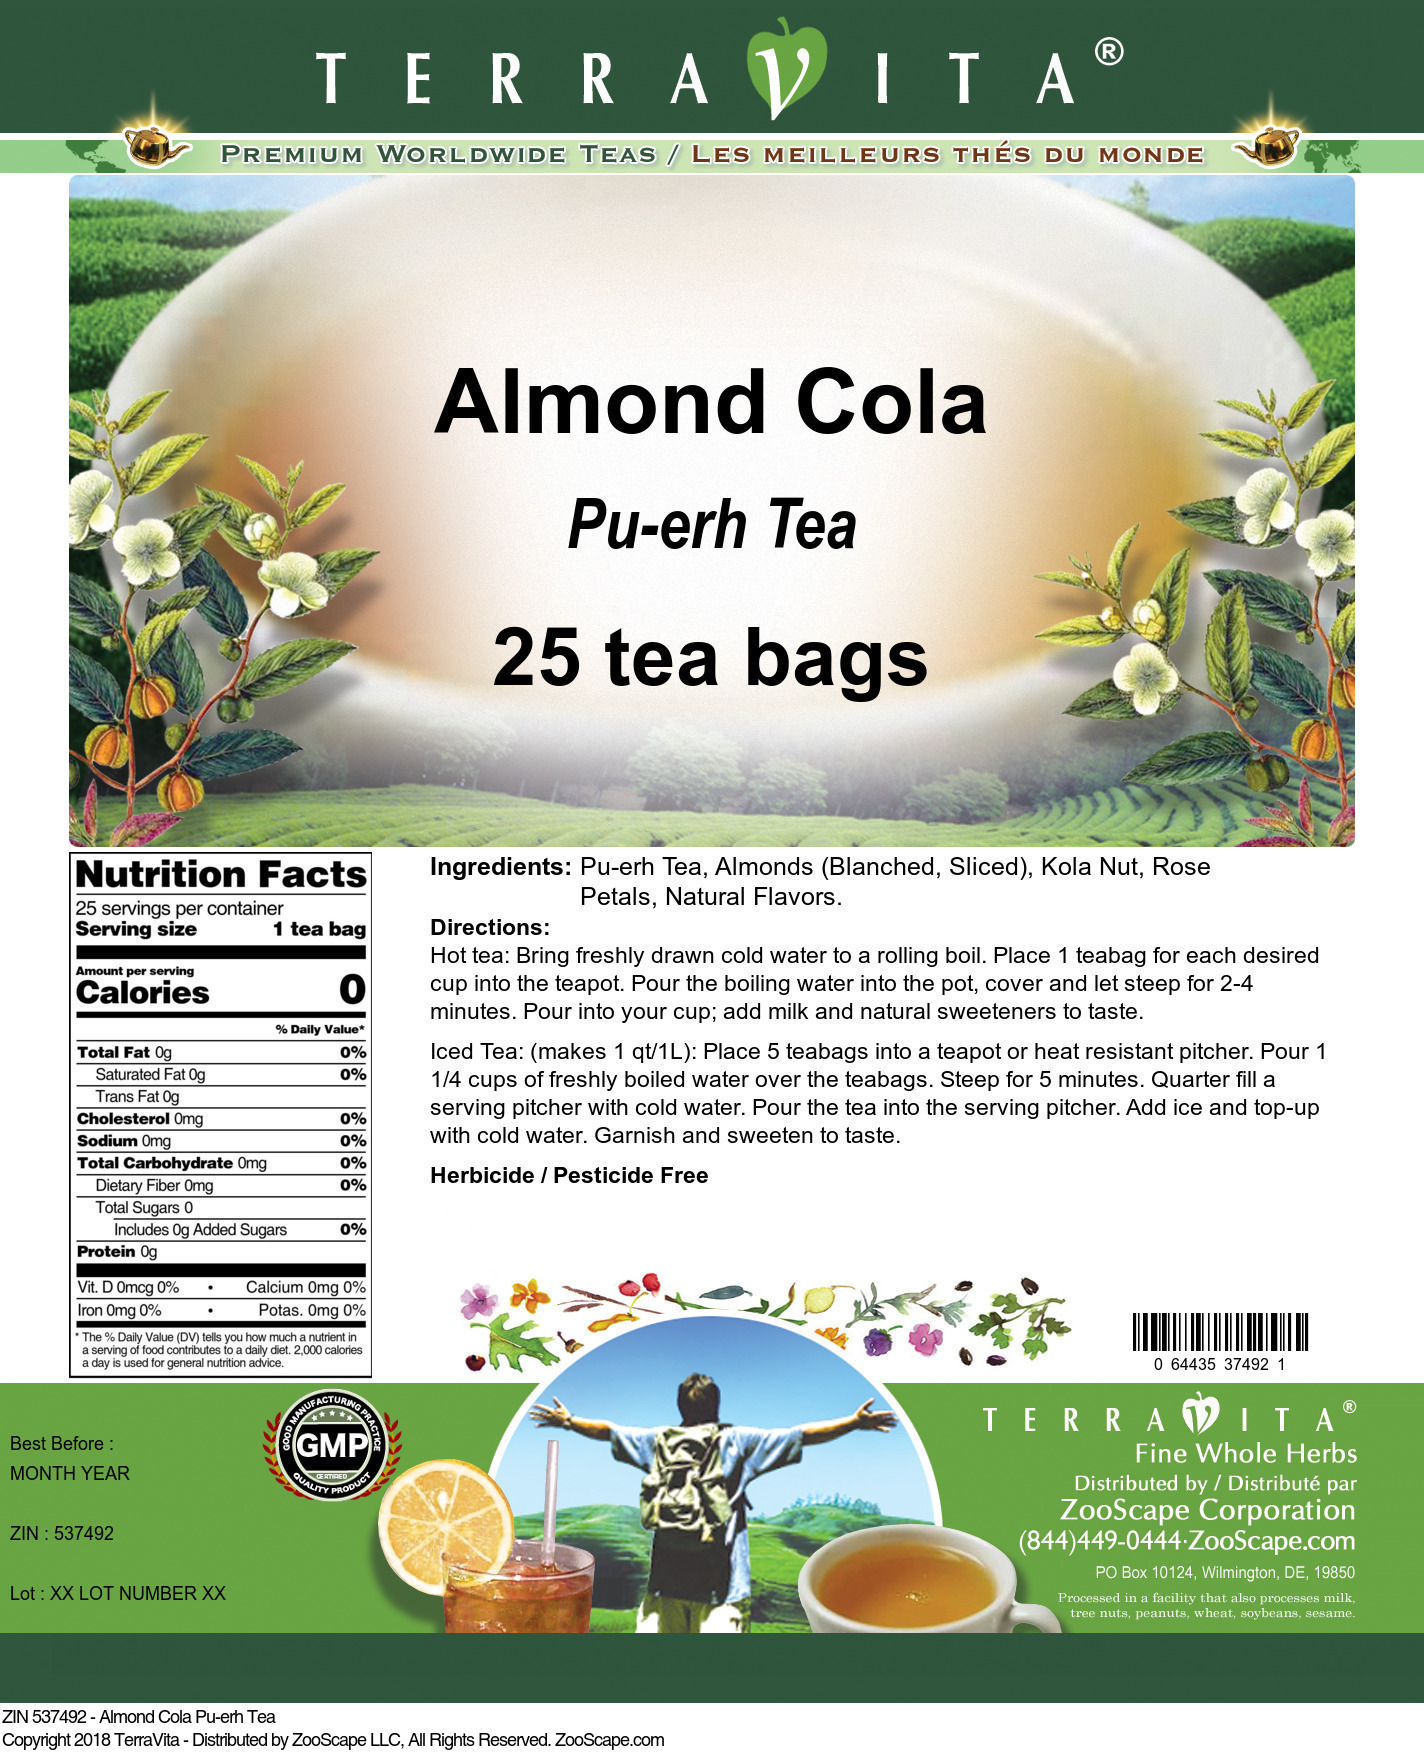 Almond Cola Pu-erh Tea - Label